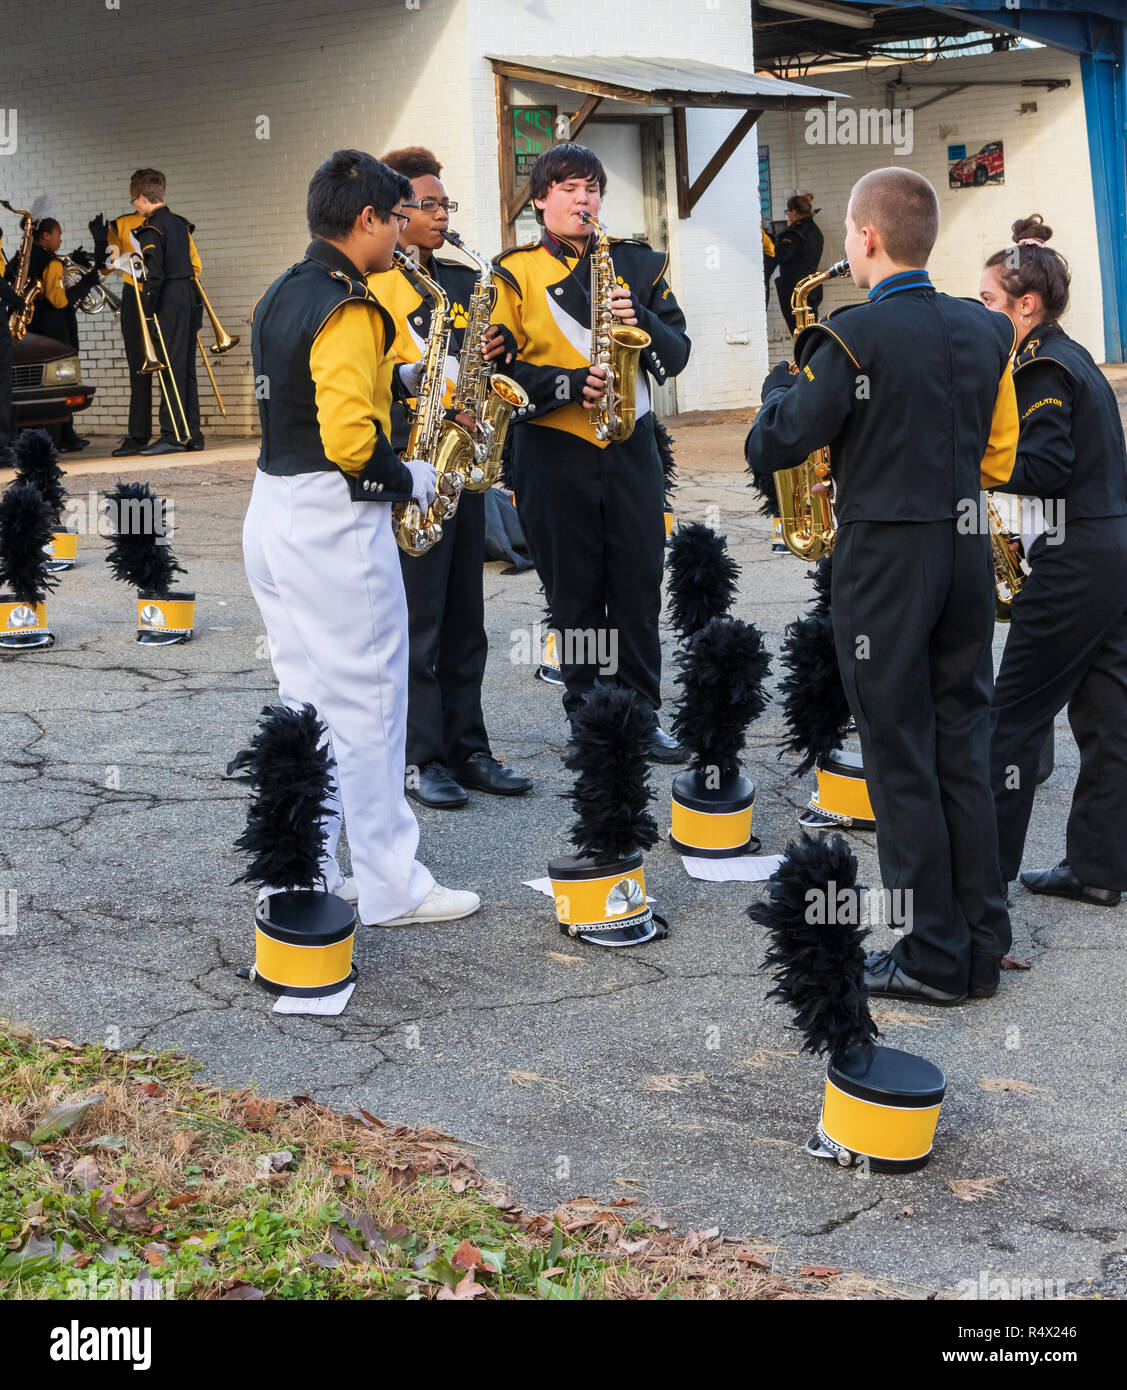 LINCOLNTON, NC, Stati Uniti d'America-11/25/18: Ssaxophonist in una marching band, praticando prima sfilata, con cappelli impostazione sul terreno. Foto Stock